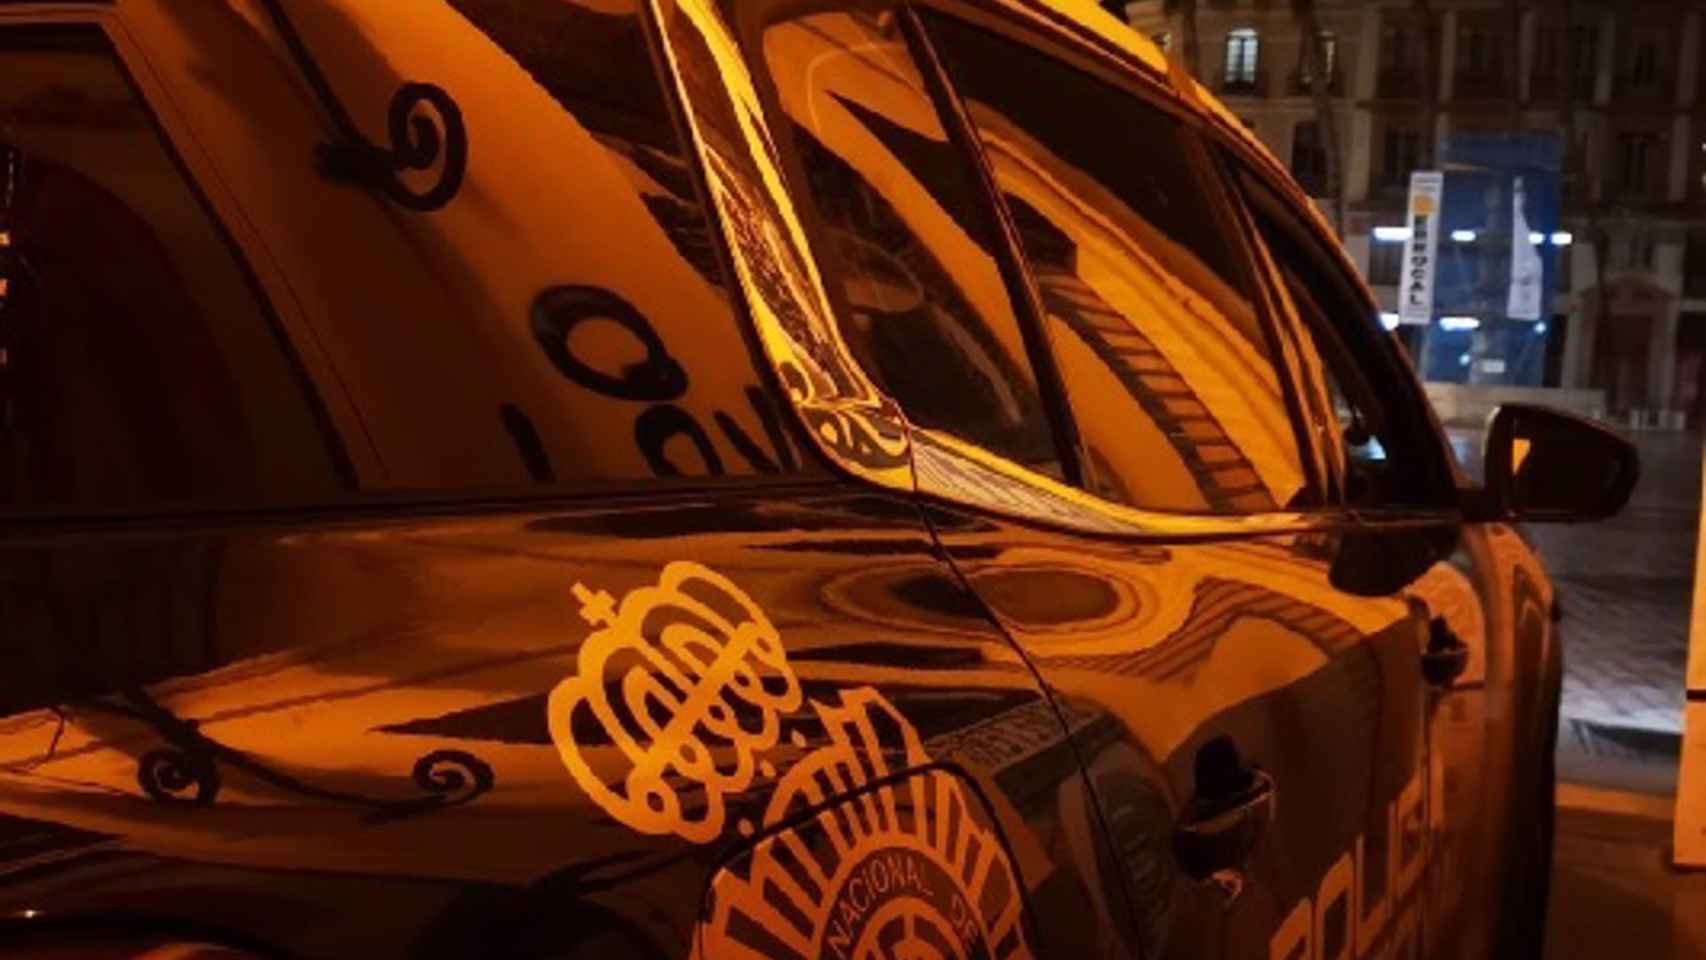 Vehículo policía nacional de noche Málaga.